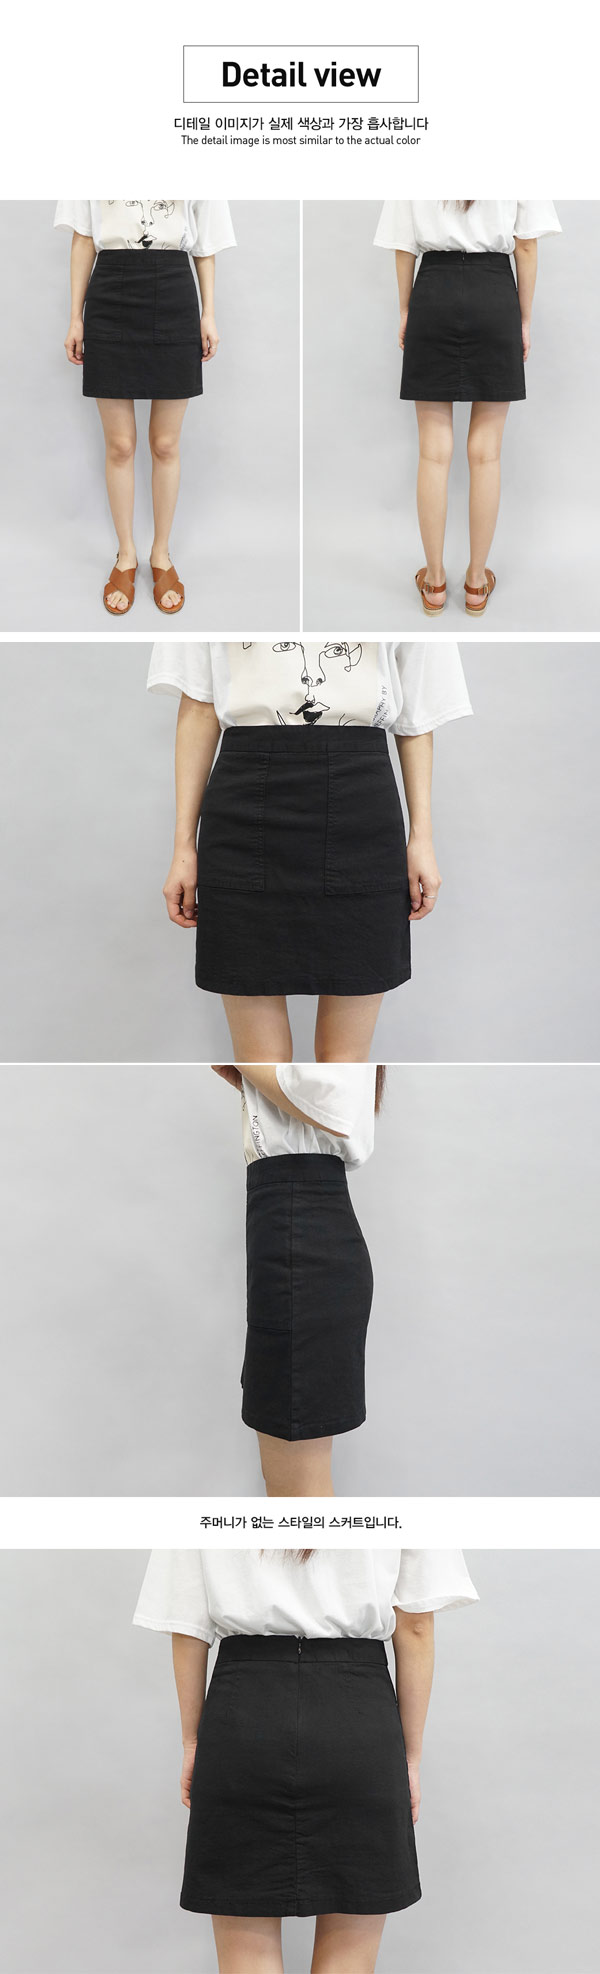 正韓 甜美腰身純色A字短裙-(黑色)100%Korea Jeans